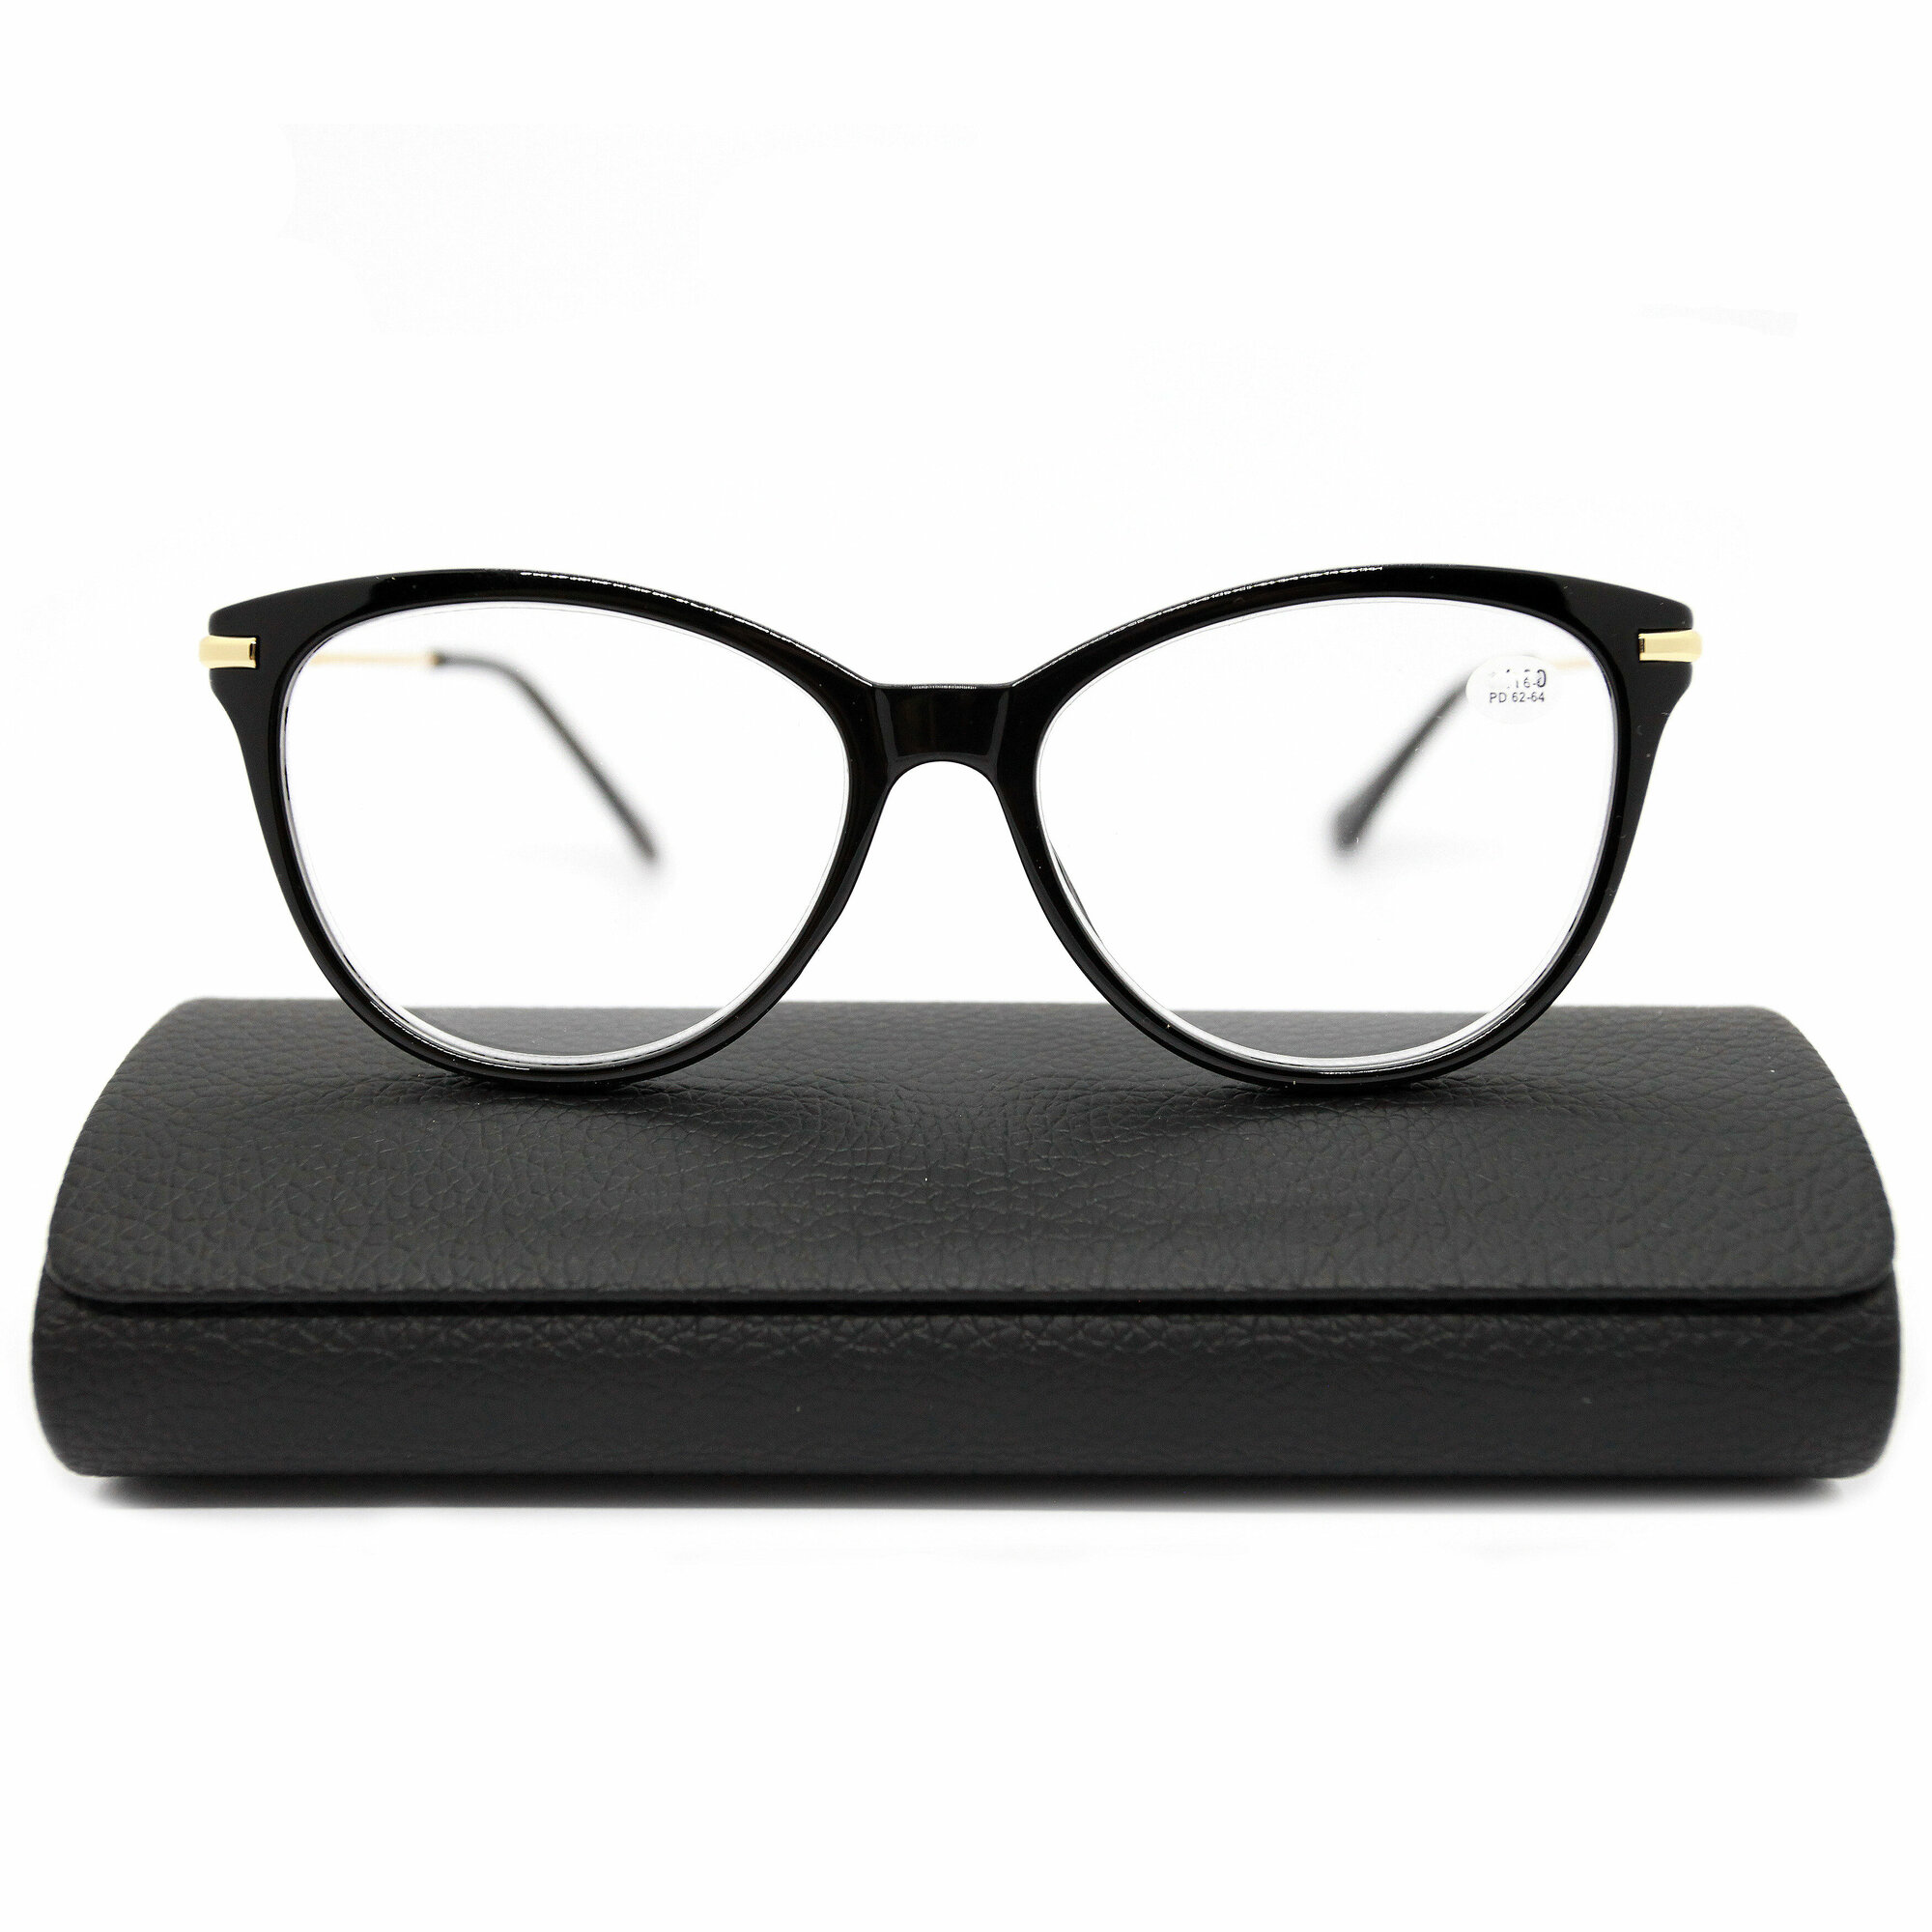 Модные женские готовые очки с металлической дужкой (-1.50) FABIA MONTI 0202, цвет черный, линза пластик, с футляром, РЦ 62-64